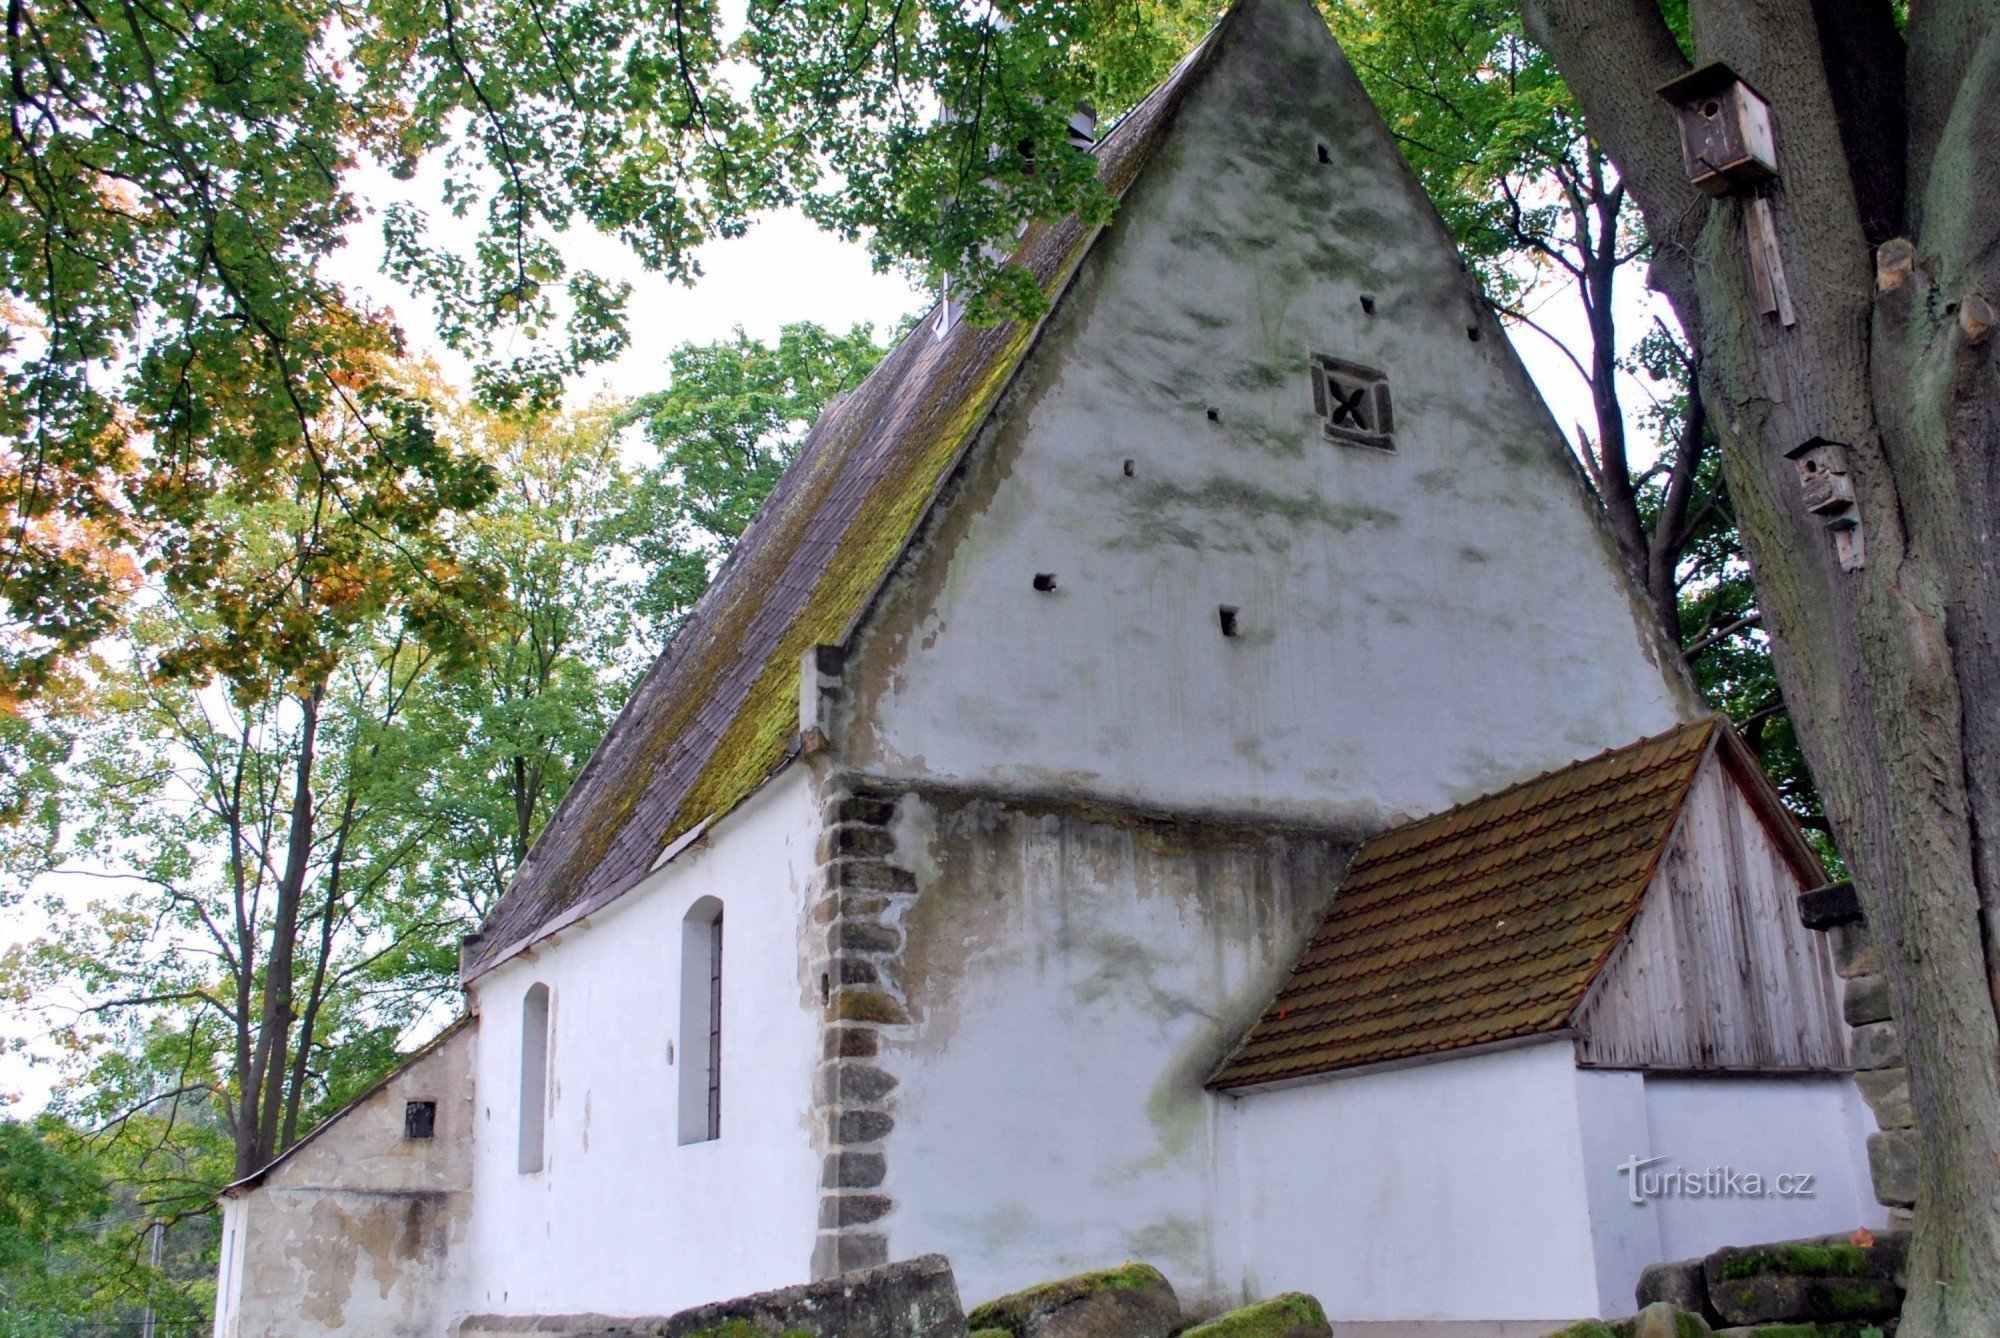 Hostíkovice - Českolipsk legrégebbi szakrális épülete